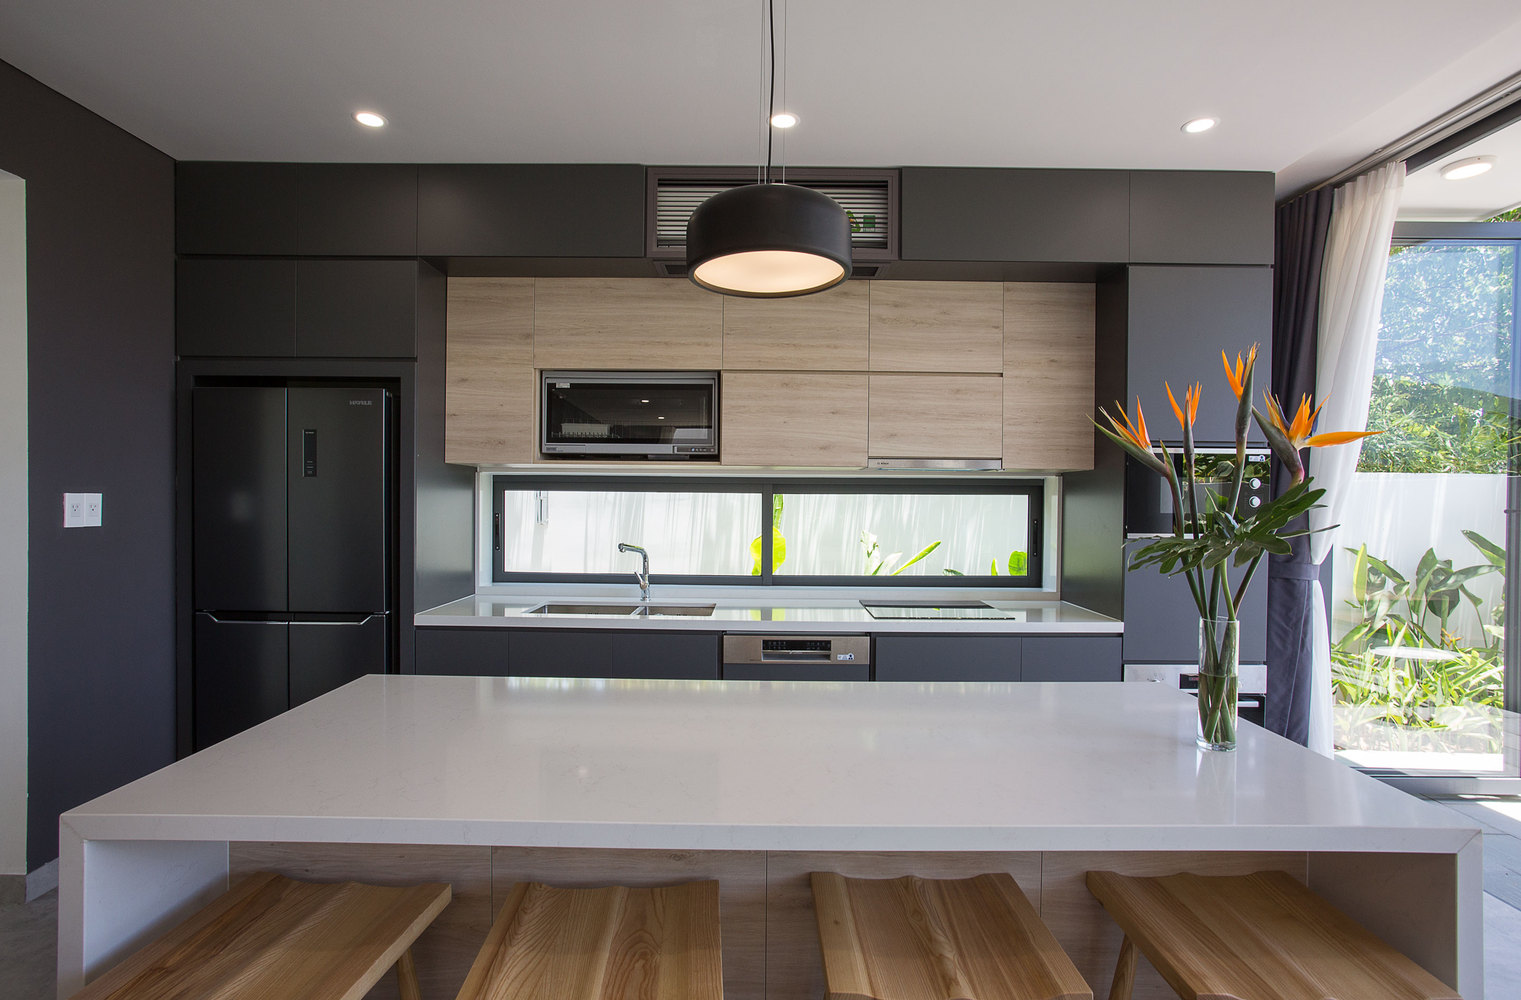 hình ảnh phòng bếp hiện đại với tủ màu xám đen xen kẽ chất liệu gỗ ấm áp, bàn đảo màu trắng, gầm bàn đặt ghế gỗ